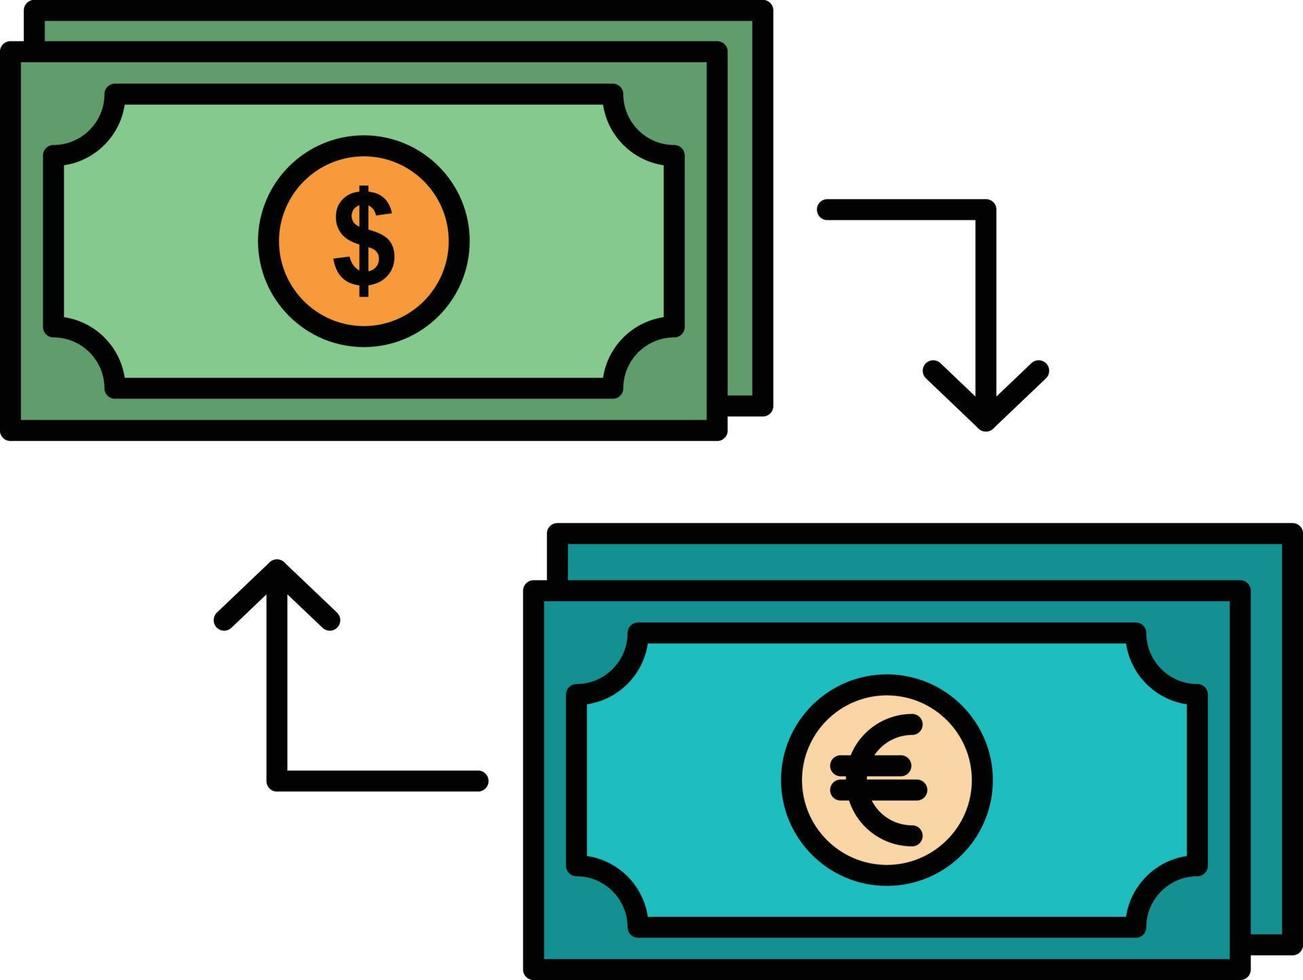 échange entreprise dollar euro finance financier argent plat couleur icône vecteur icône modèle de bannière